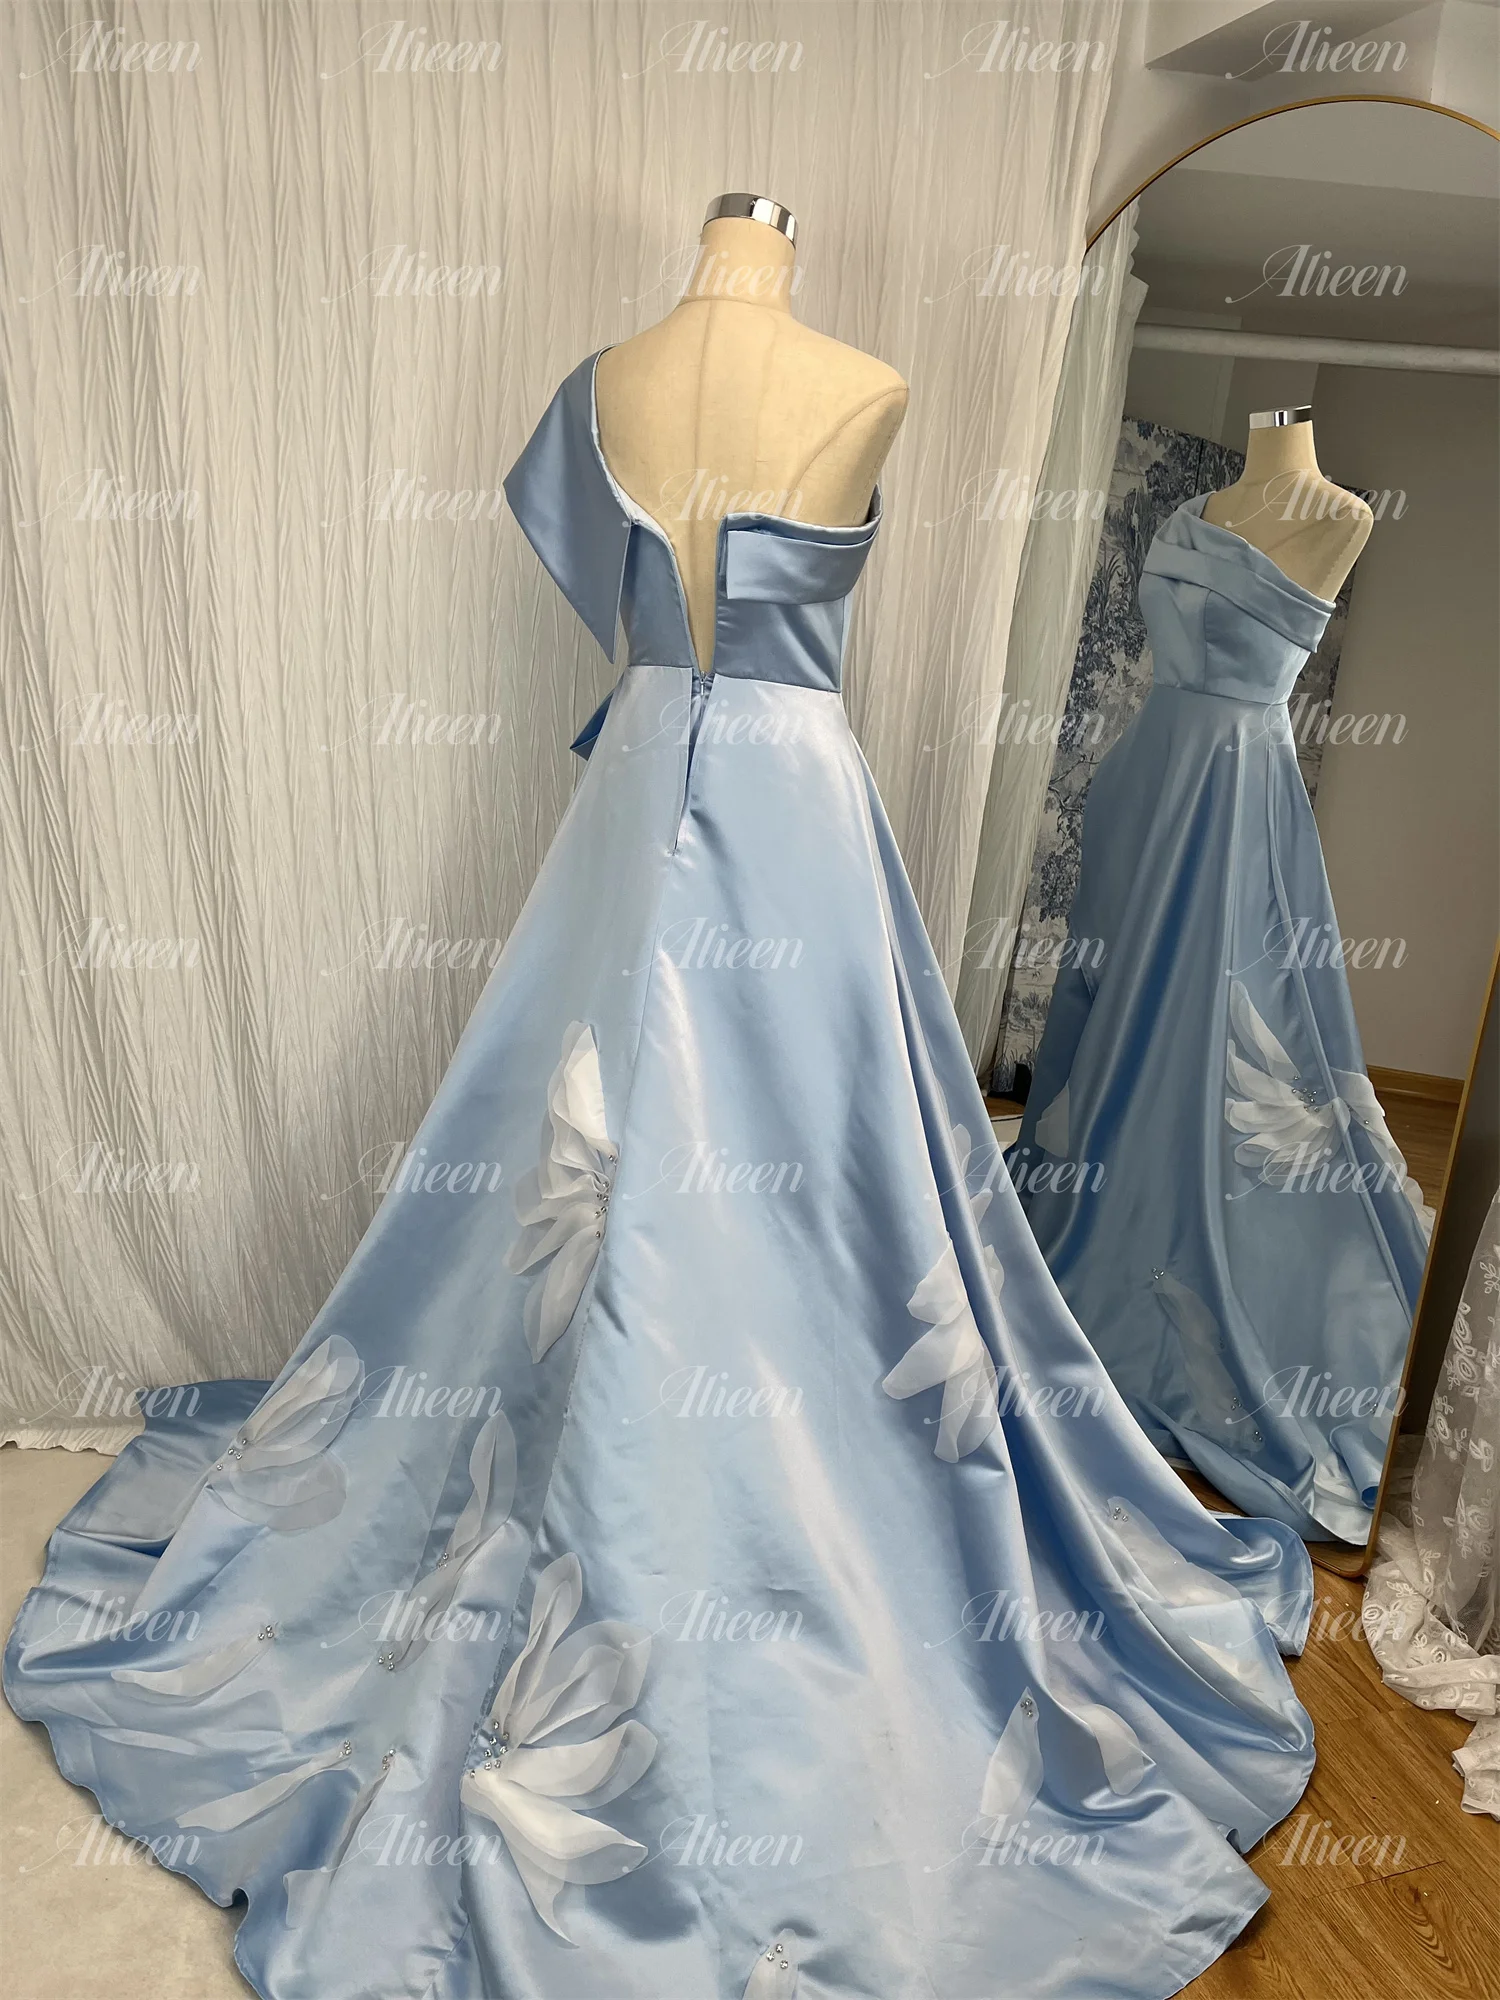 Aileen modrá satén elegantní lotos aršík kvést lodni linky dámská večírek šaty ženský maturitní šaty pro ples nevěsta formální svatební